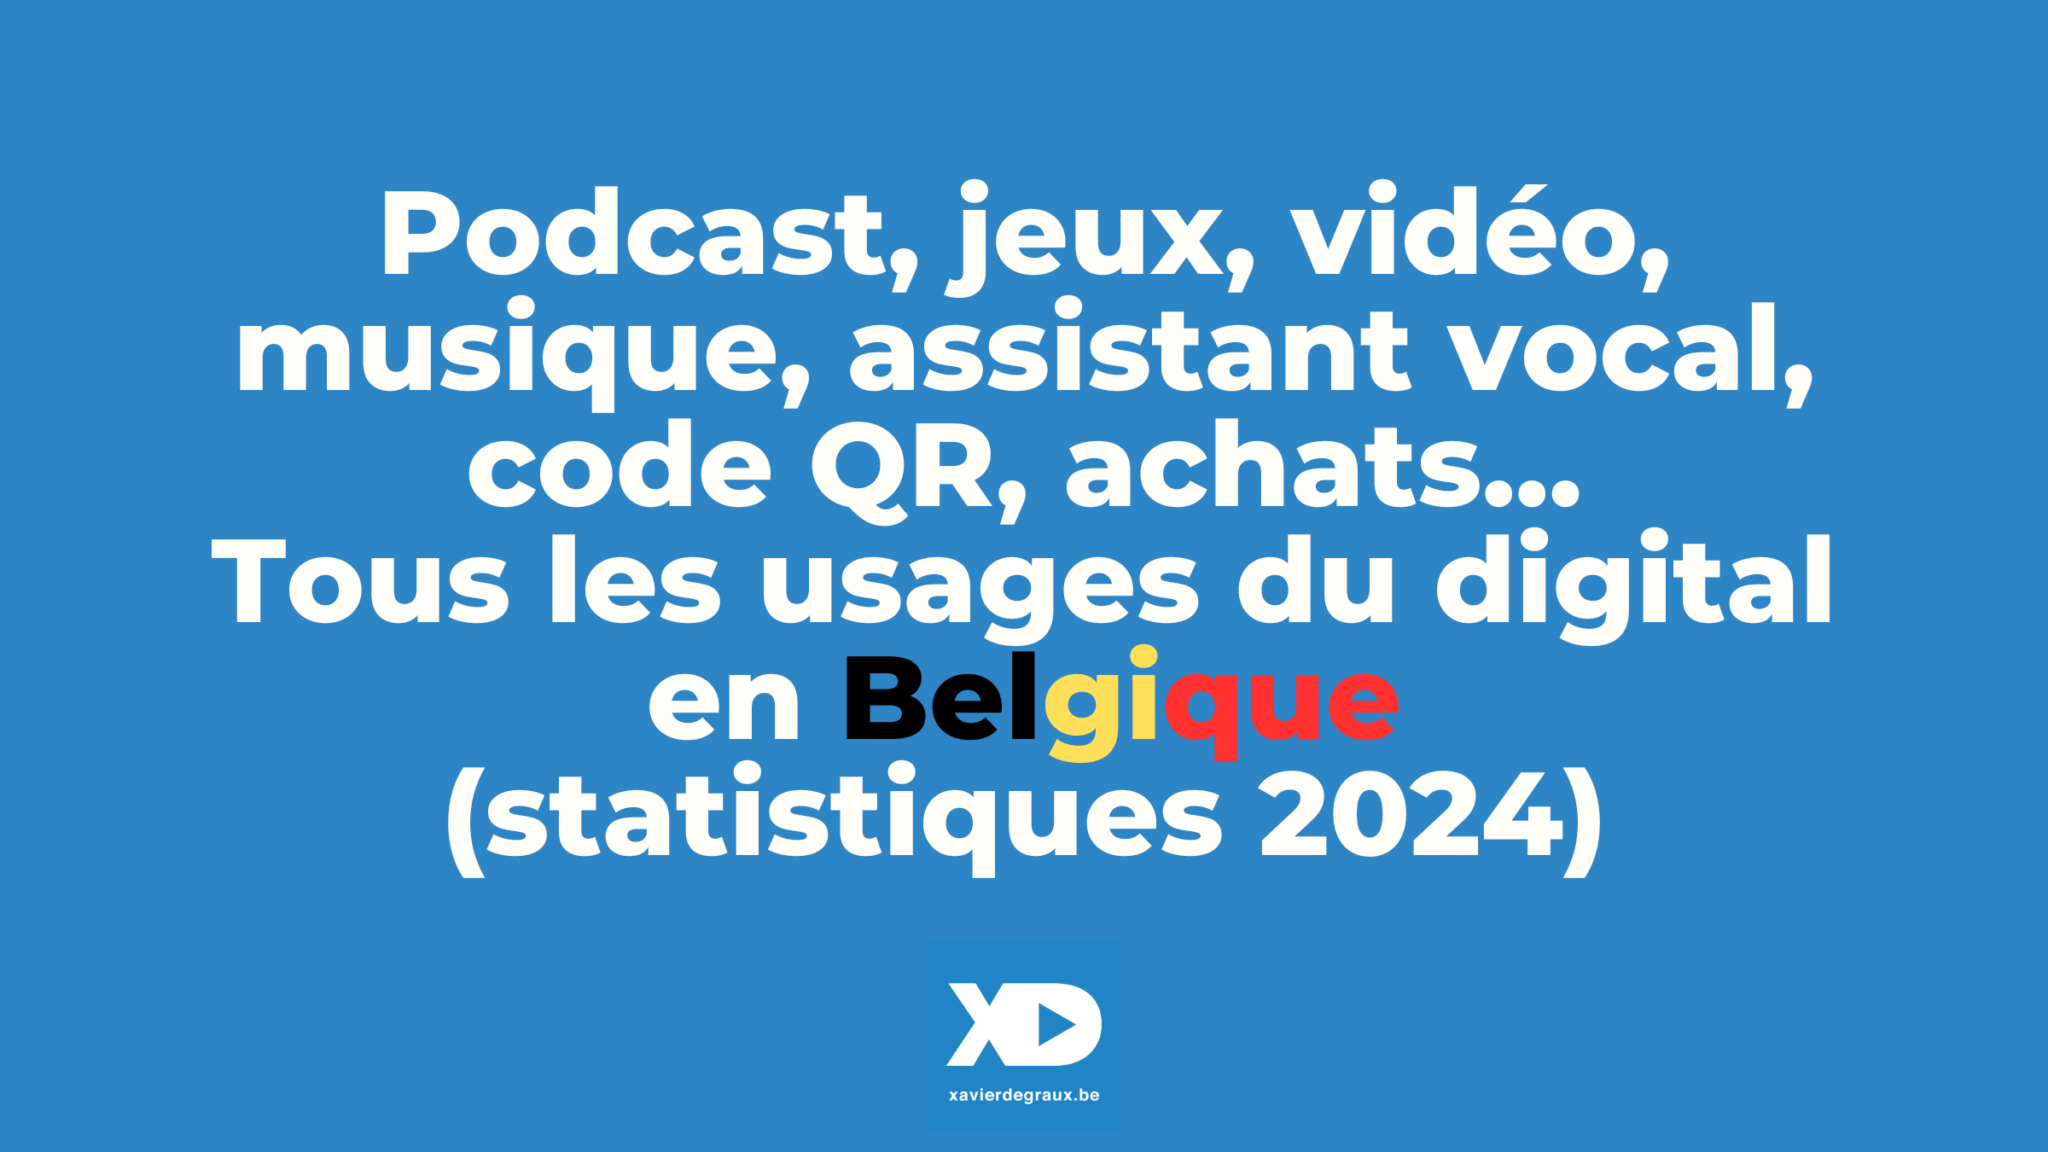 Tous les usages du digital en Belgique (statistiques 2024)